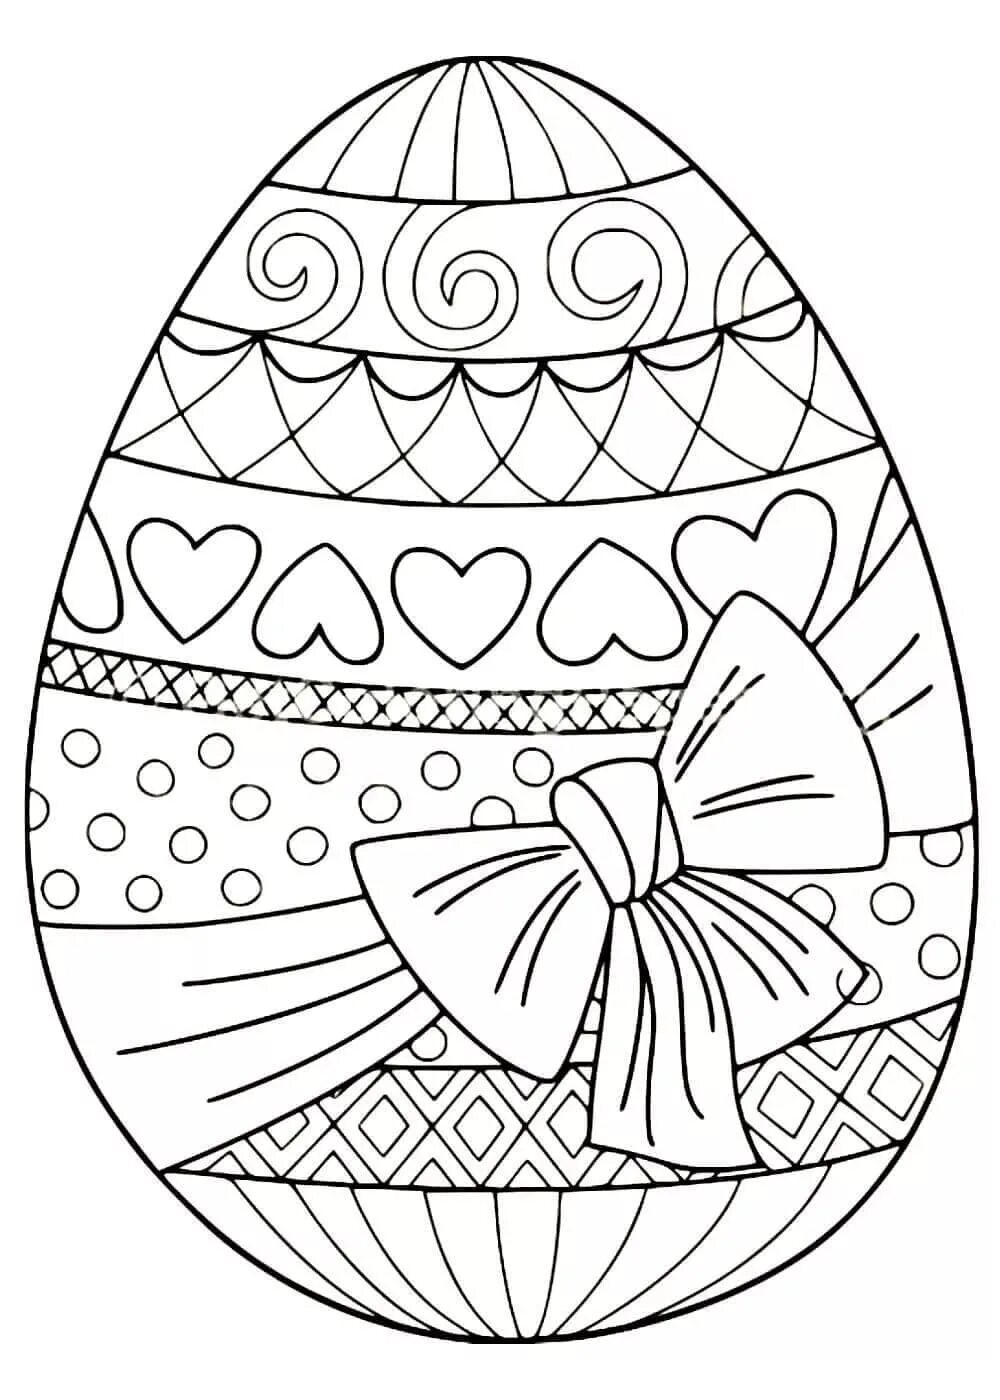 Пасхальные раскраски распечатать. Пасхальное яйцо раскраска. Раскраски пасхальные для детей. Пасхальное яйцо раскраска для детей. Пасхальные яйца для раскрашивания.